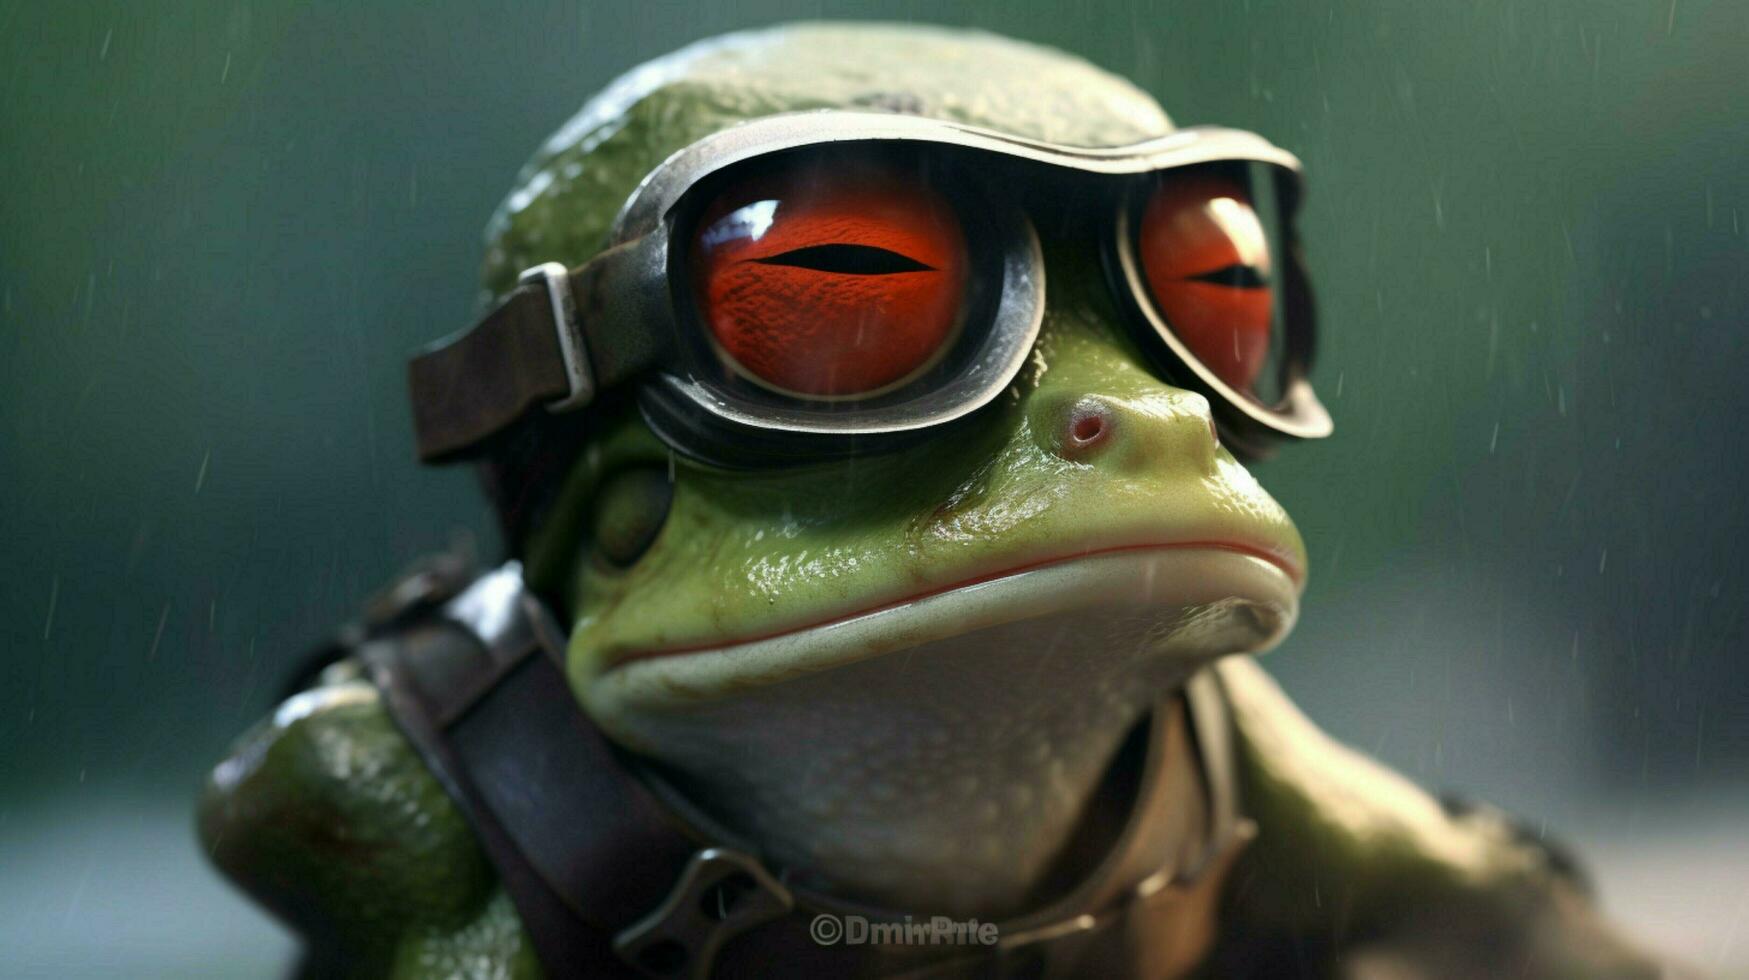 un rana con un casco y lentes foto